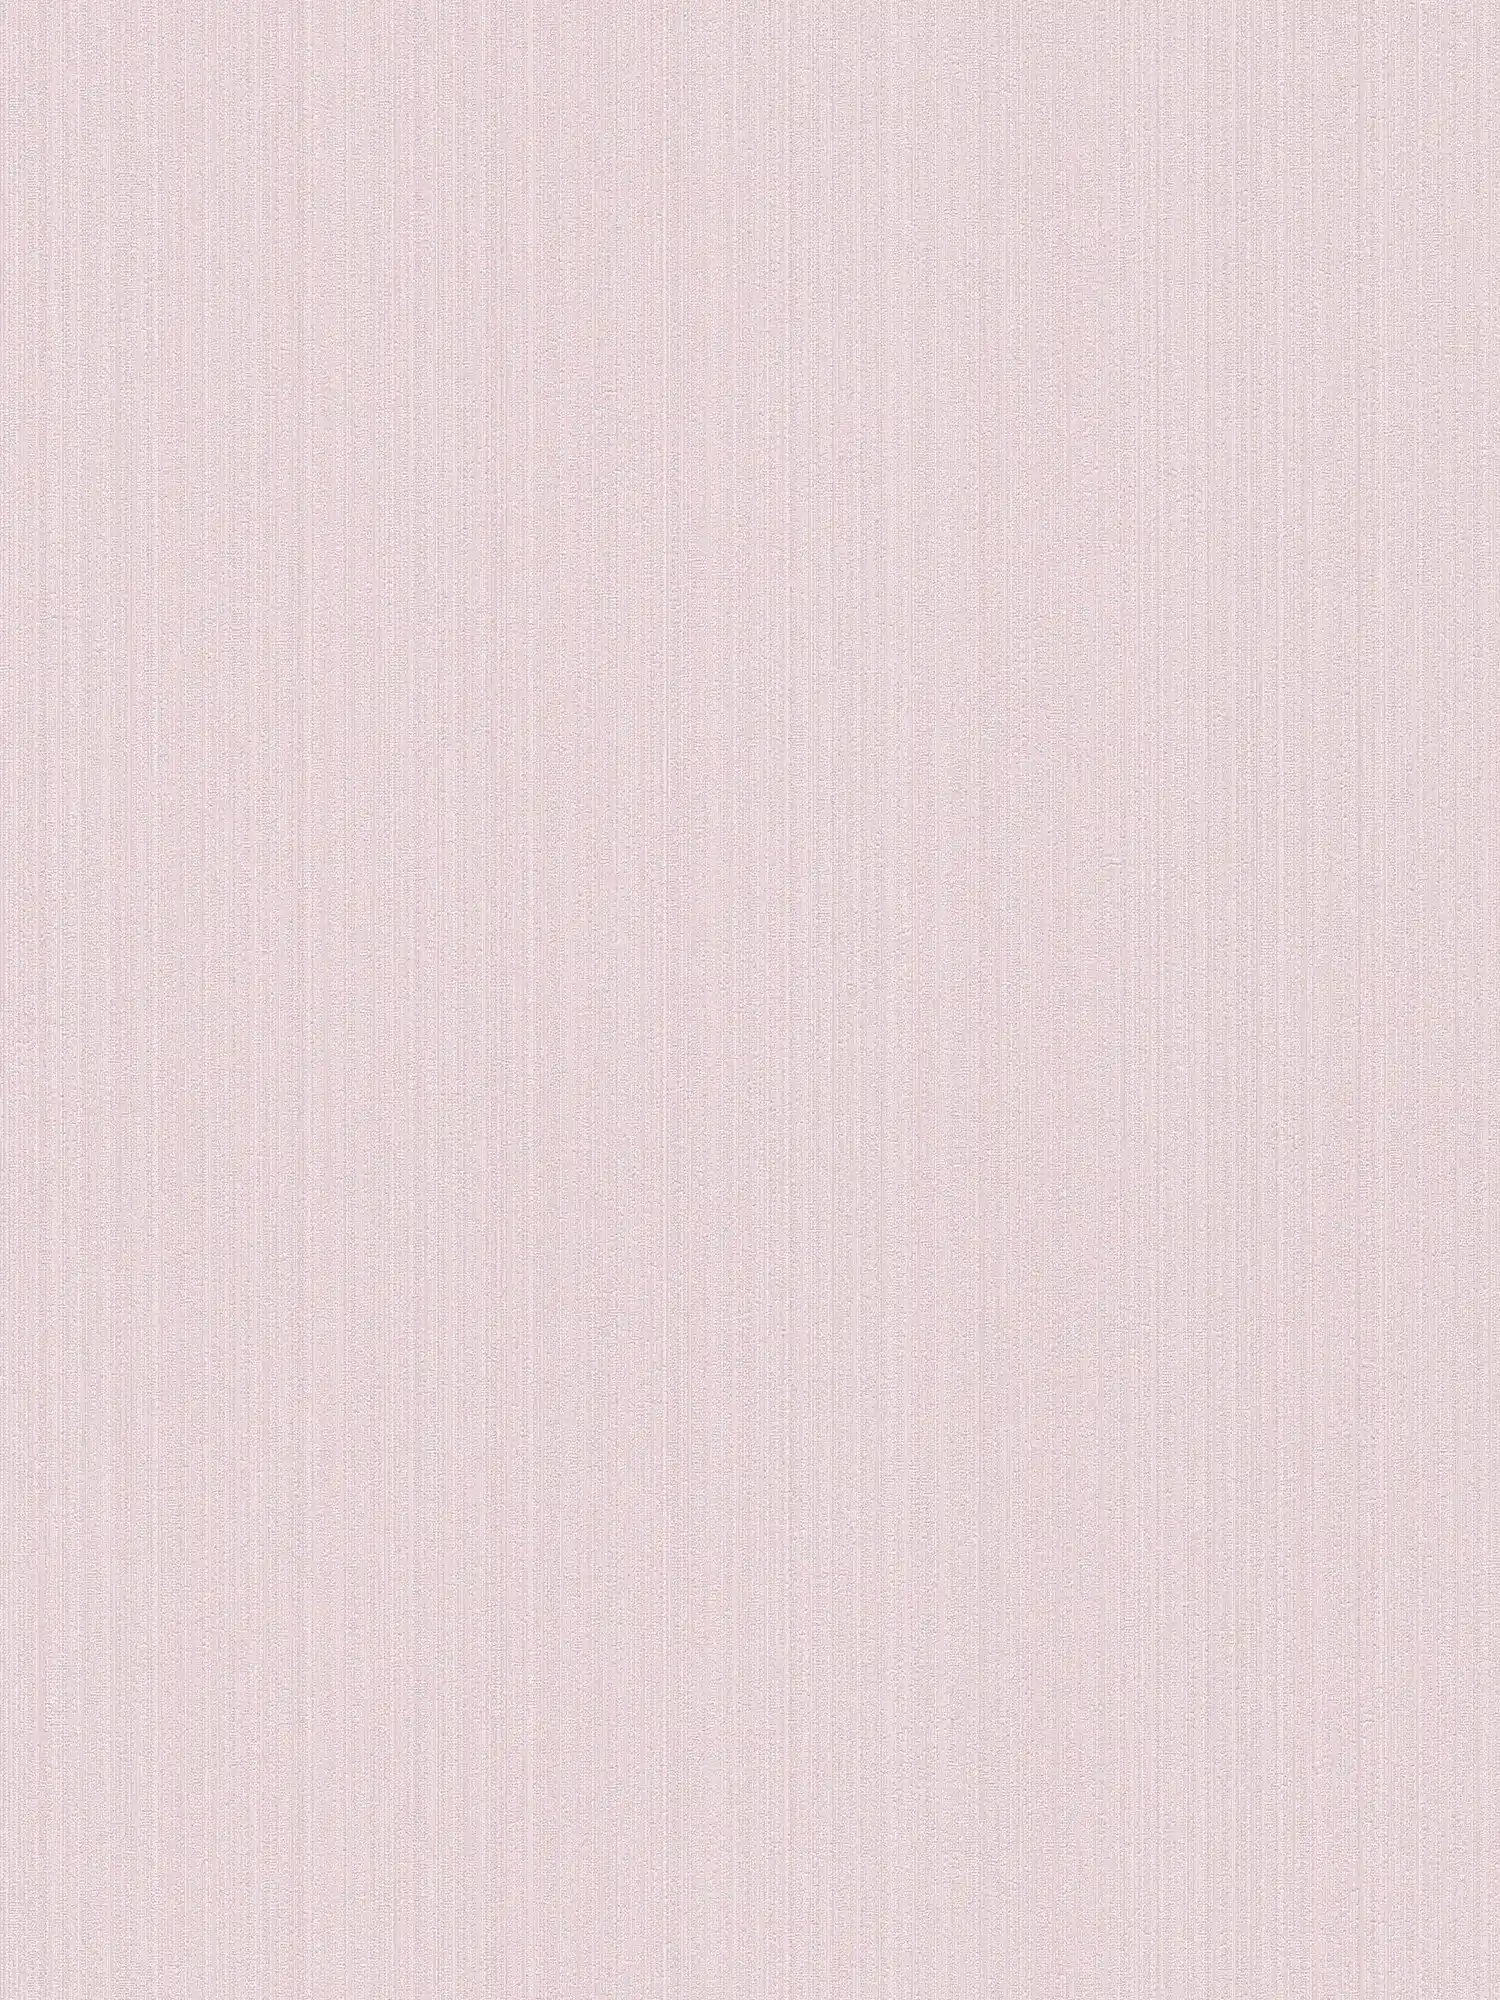 Papier peint intissé rose satiné, uni avec effet structuré
